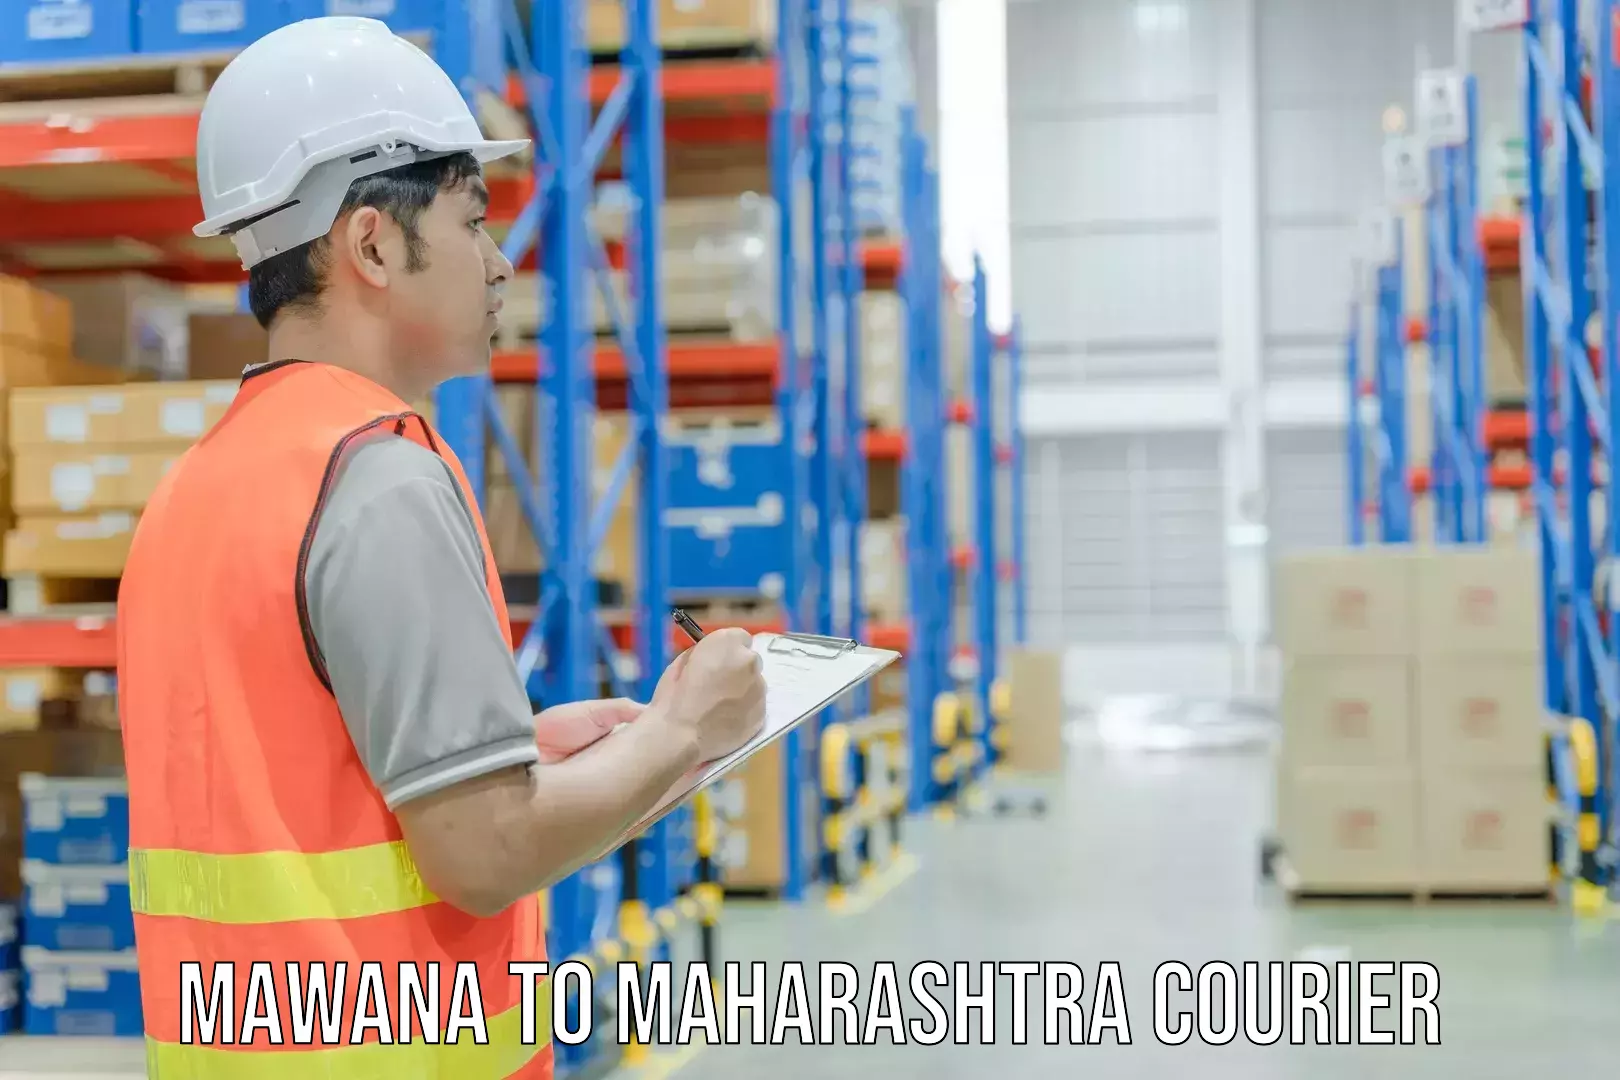 Global shipping networks Mawana to Maharashtra